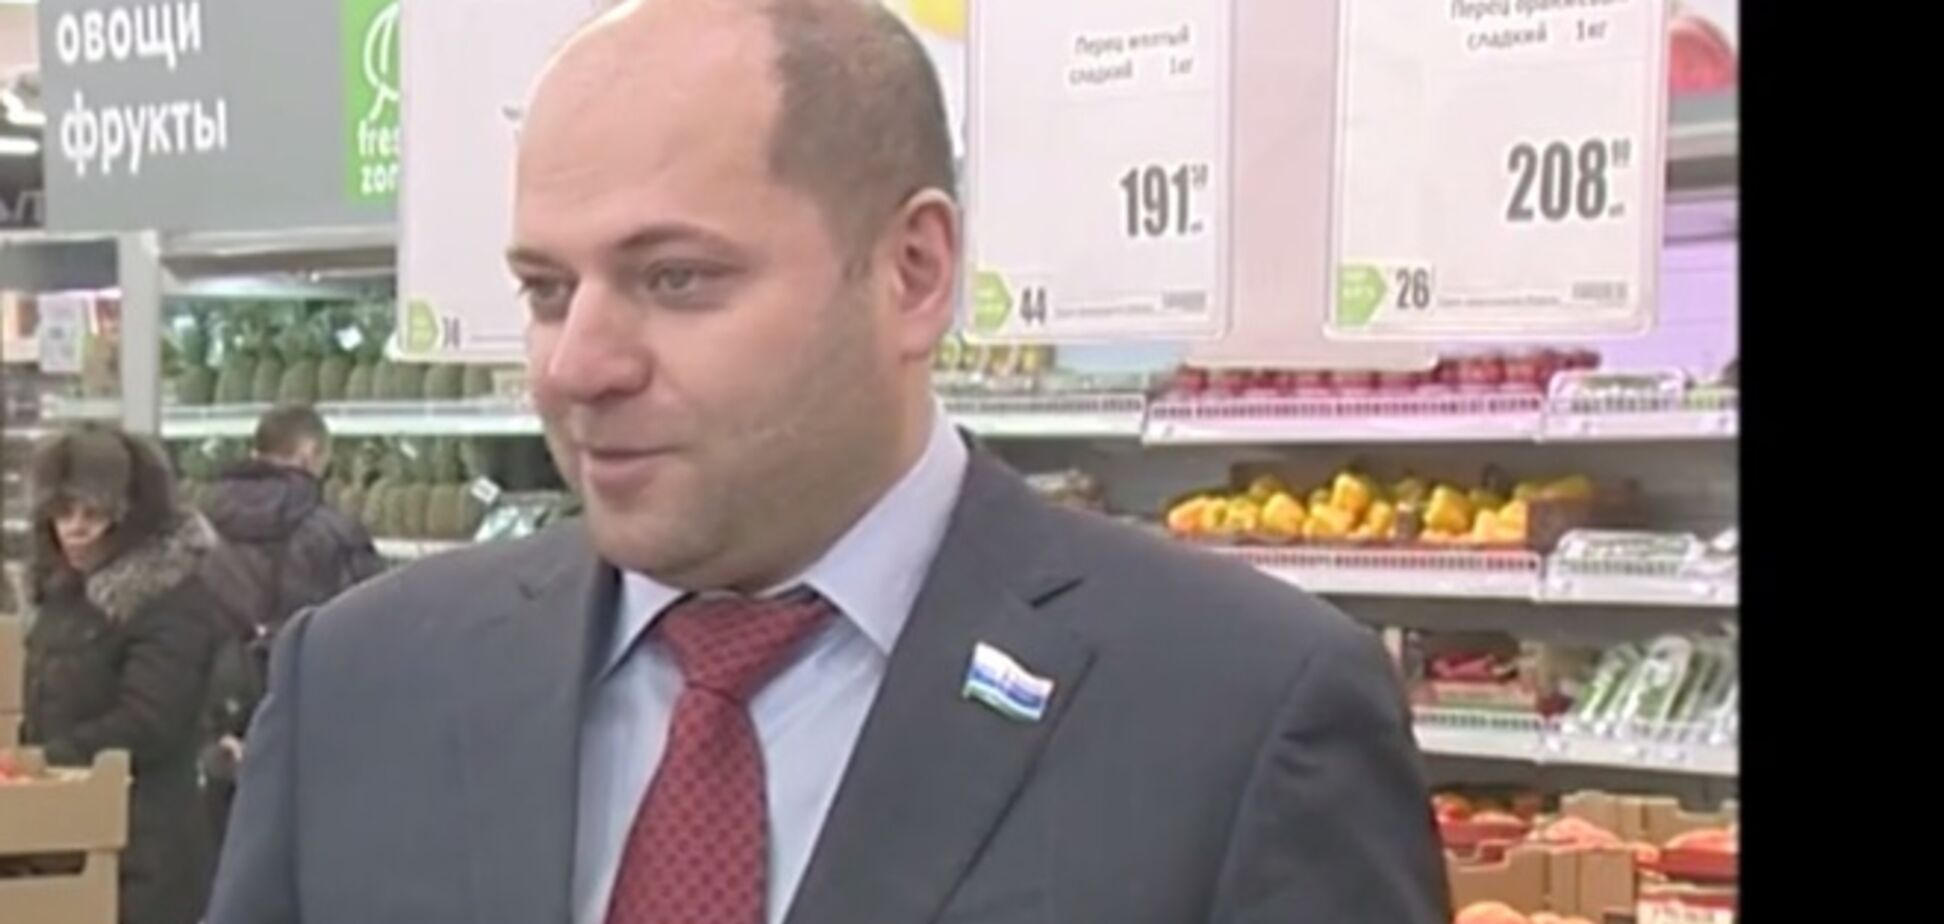 Депутат партии Путина посоветовал россиянам 'меньше питаться'. Видеофакт